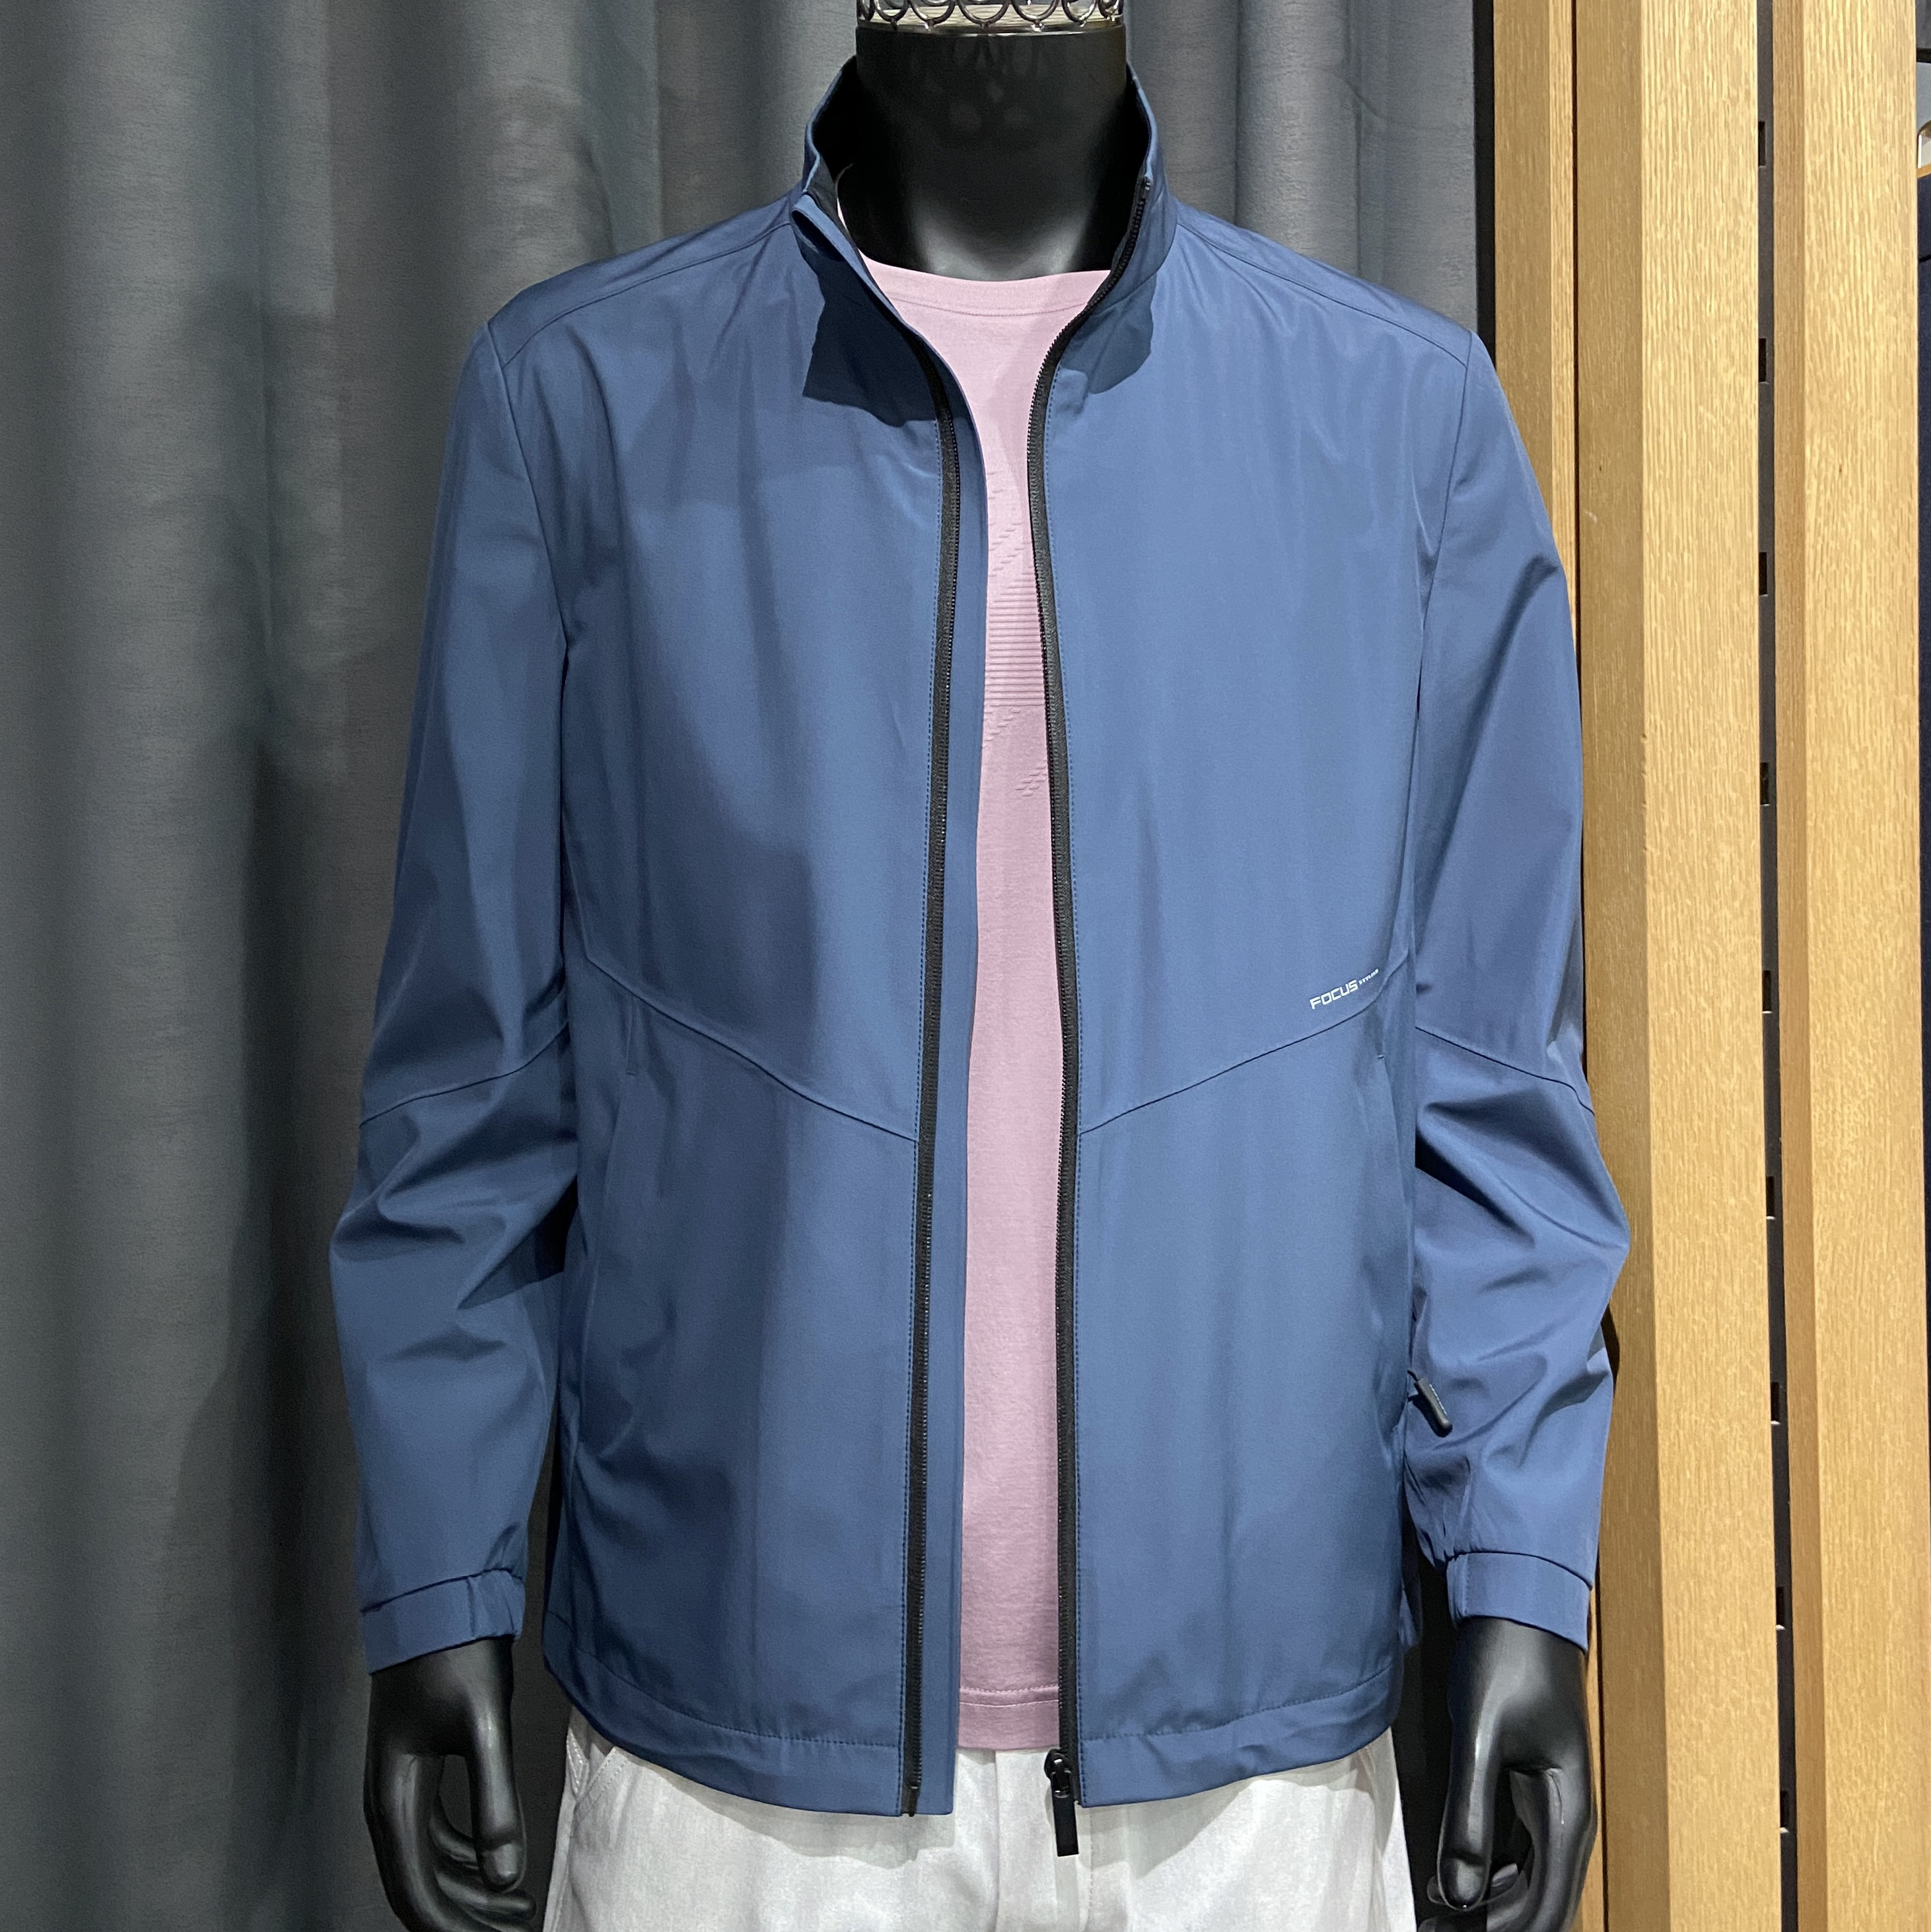 福利 男士精品立领夹克 高端复合面料 抗皱耐磨防风防水 春季外套